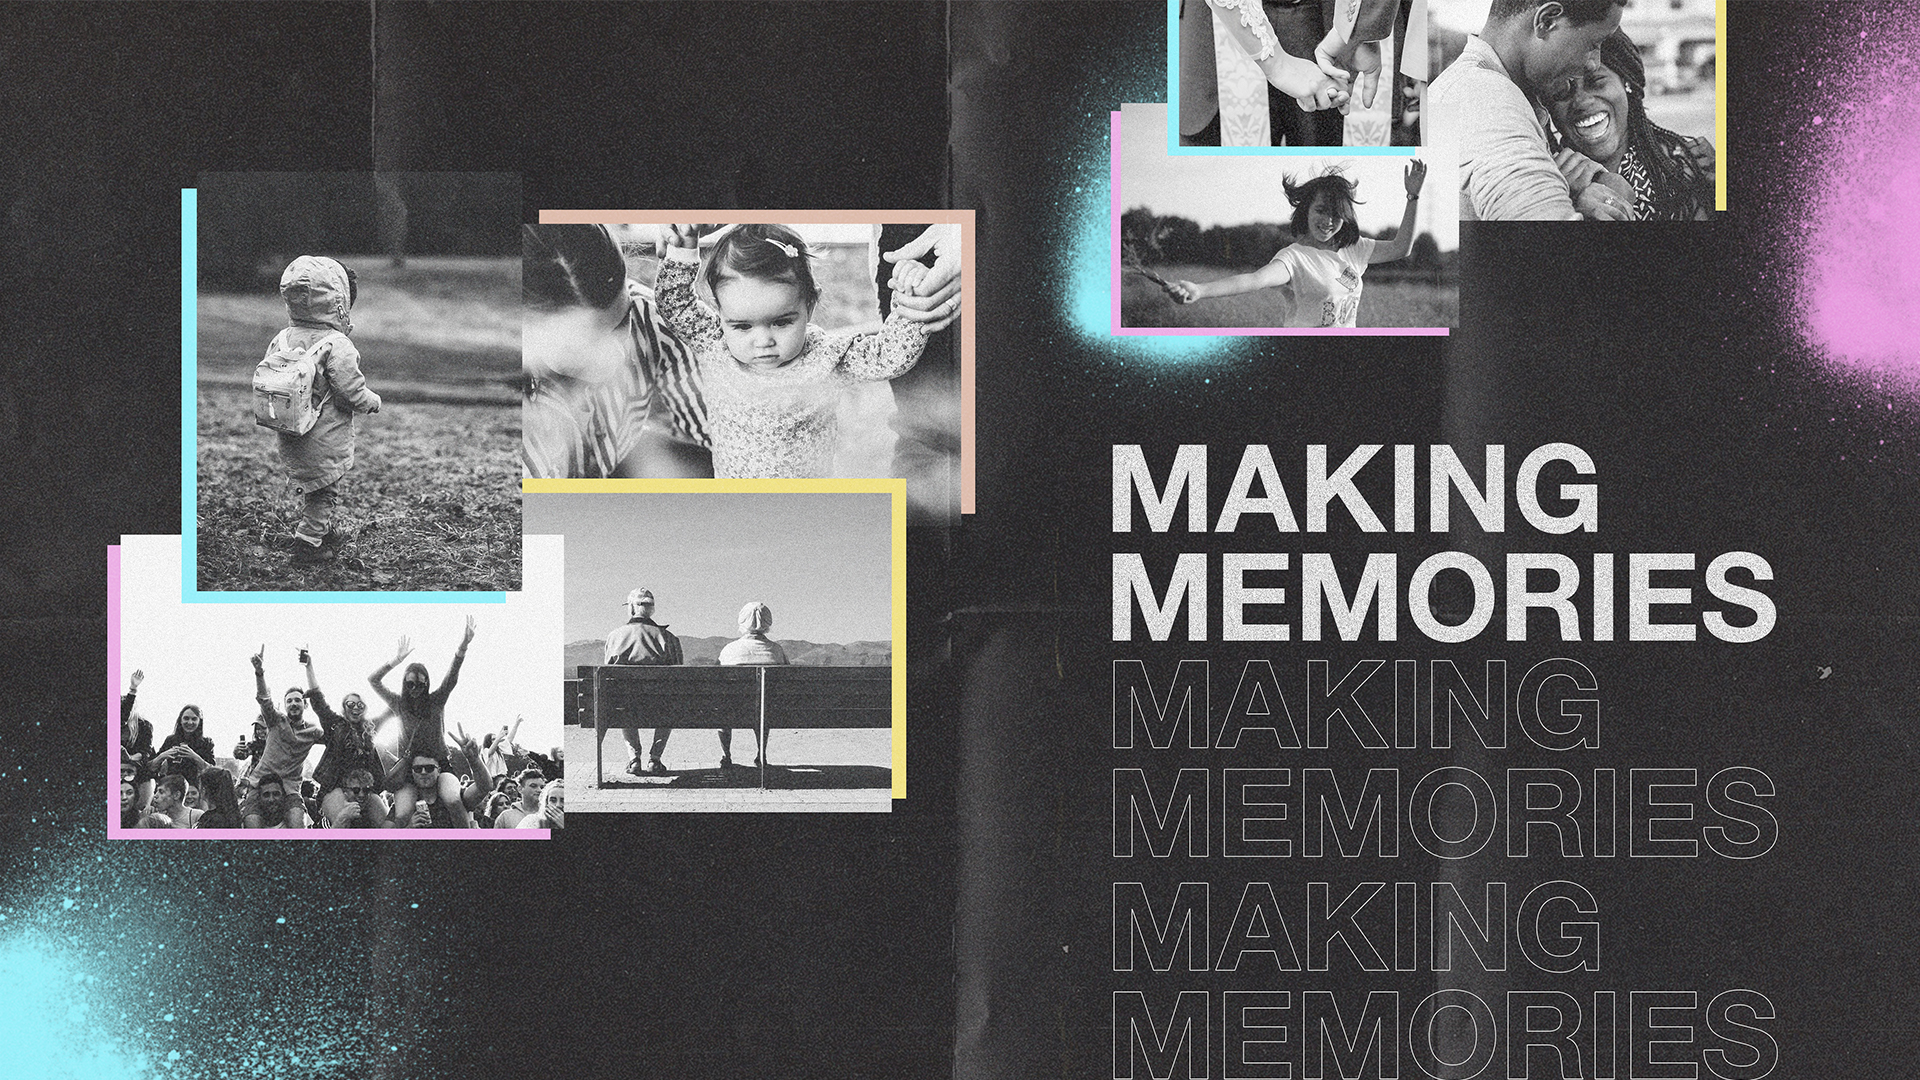 Making_Memories_Slide_Series Graphic- English.jpg